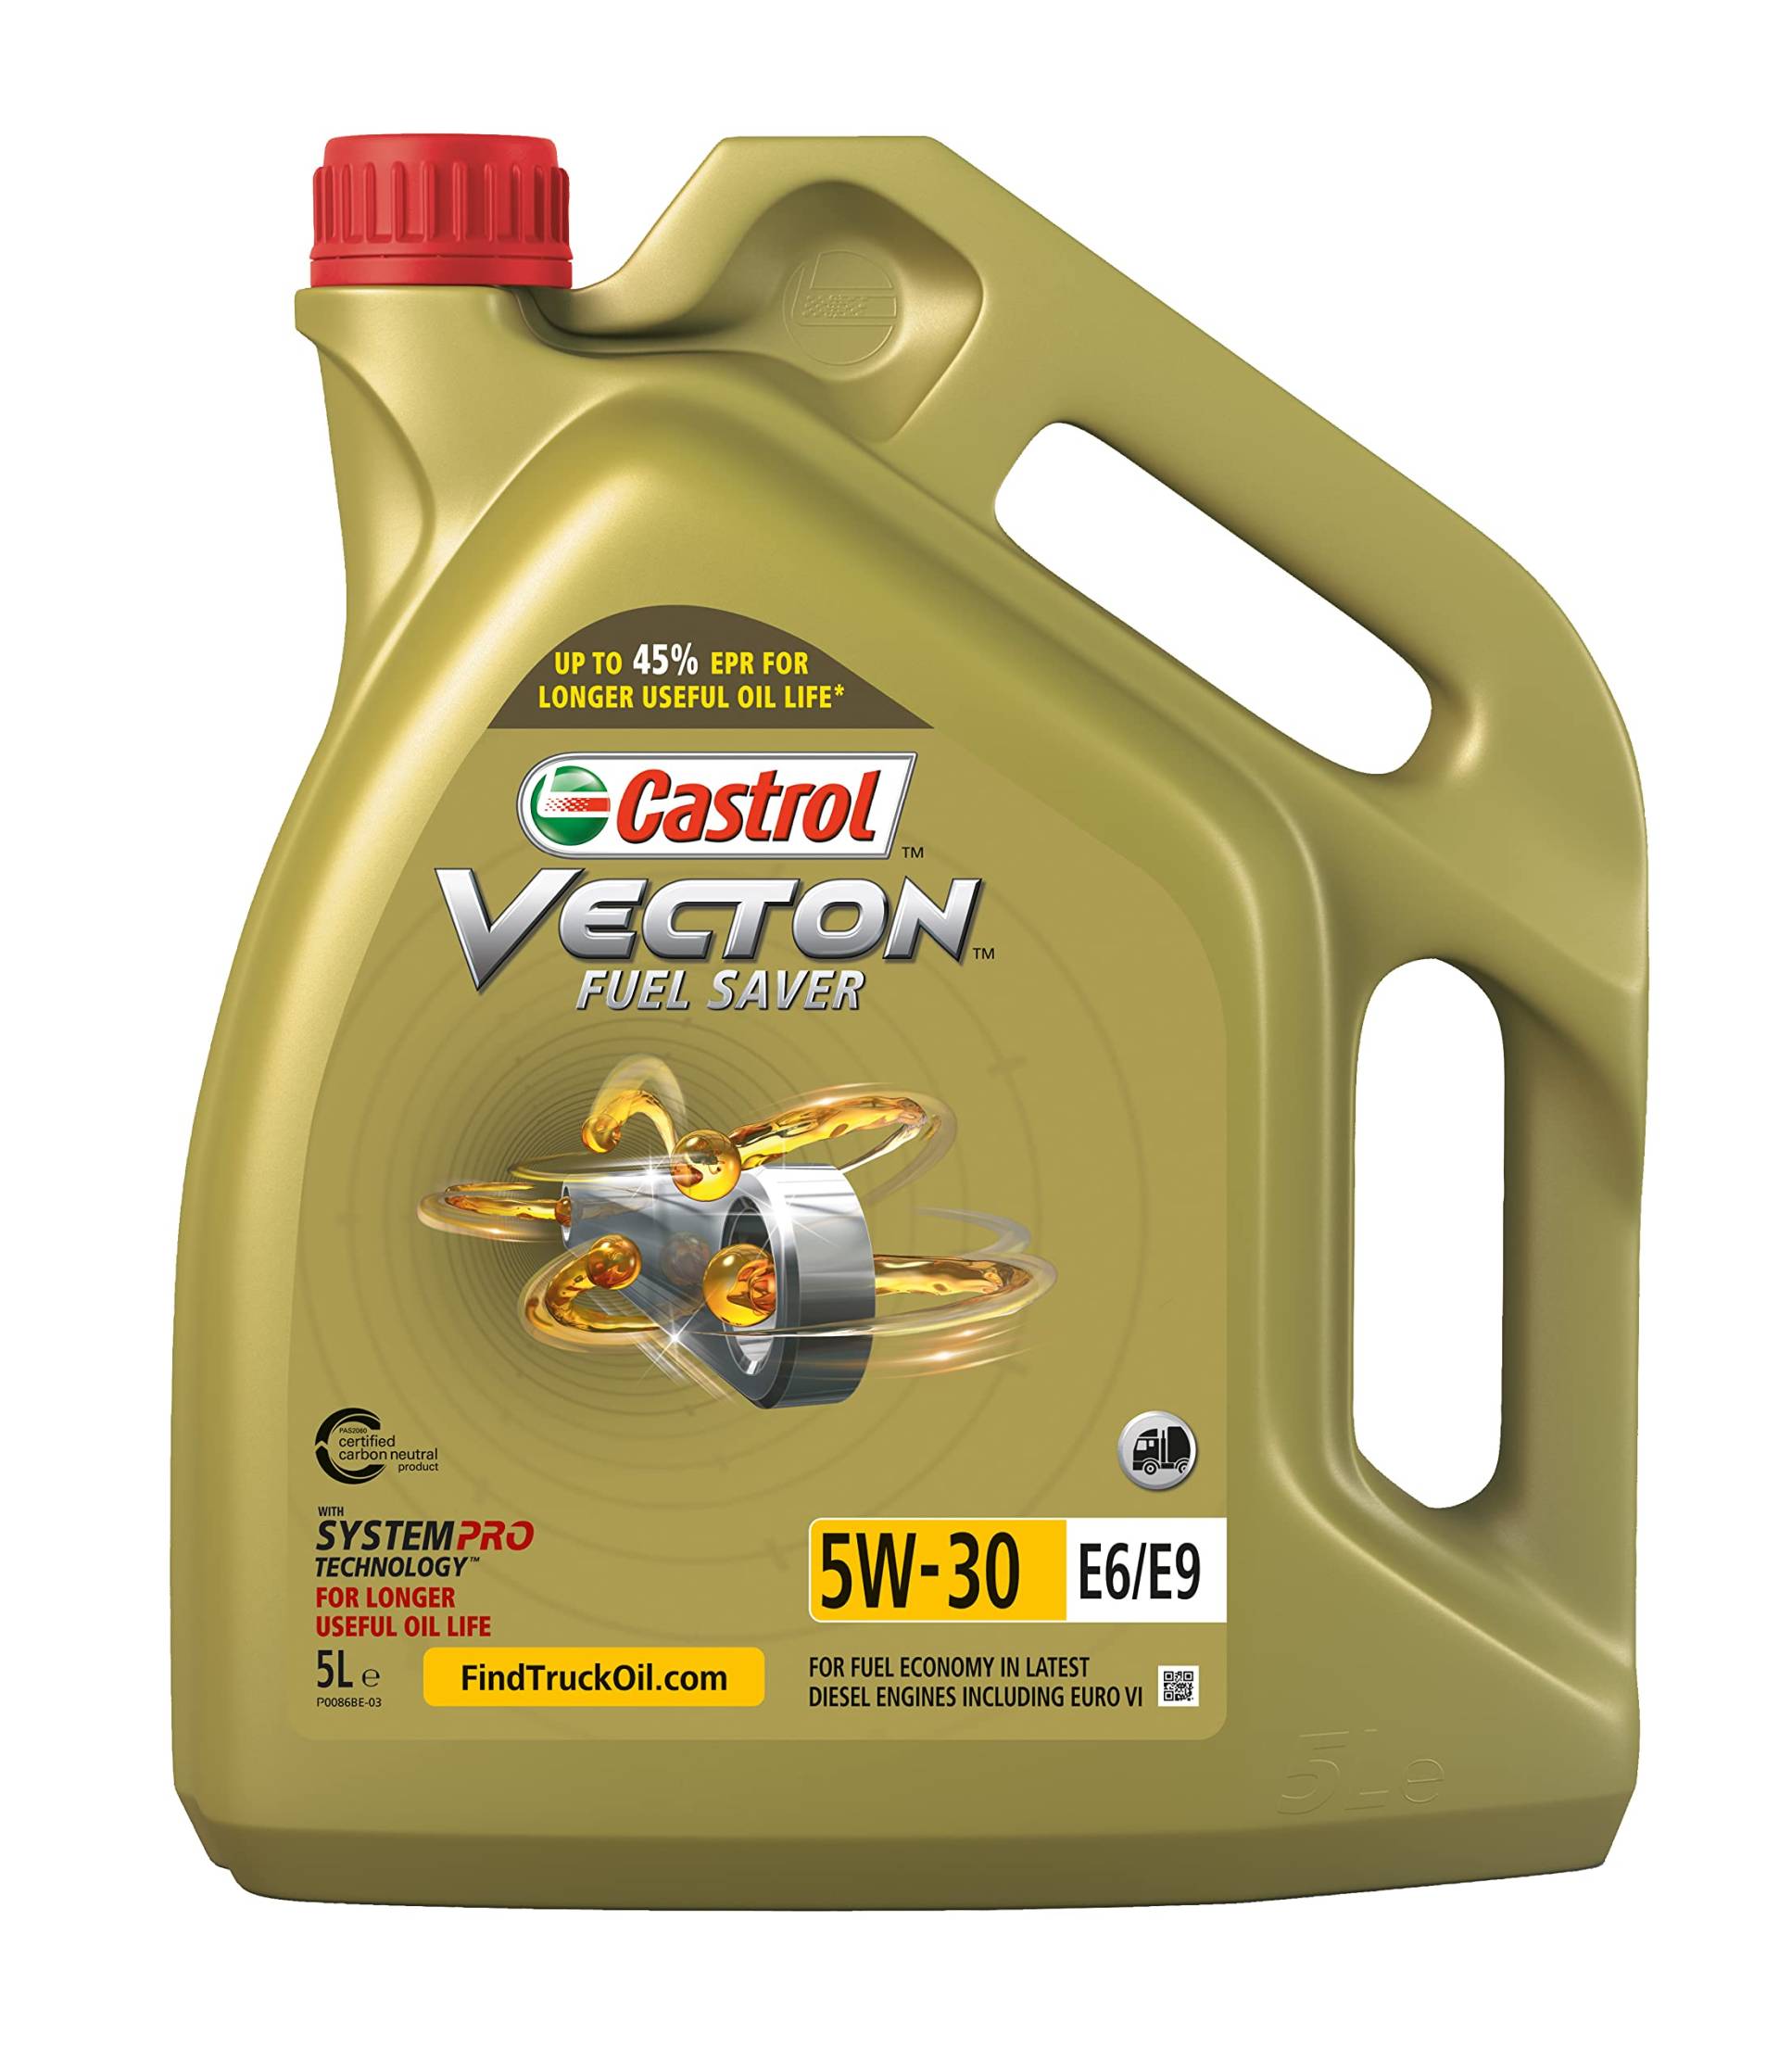 Castrol VECTON Fuel Saver 5W-30 E6/E9, 5 Liter von Castrol